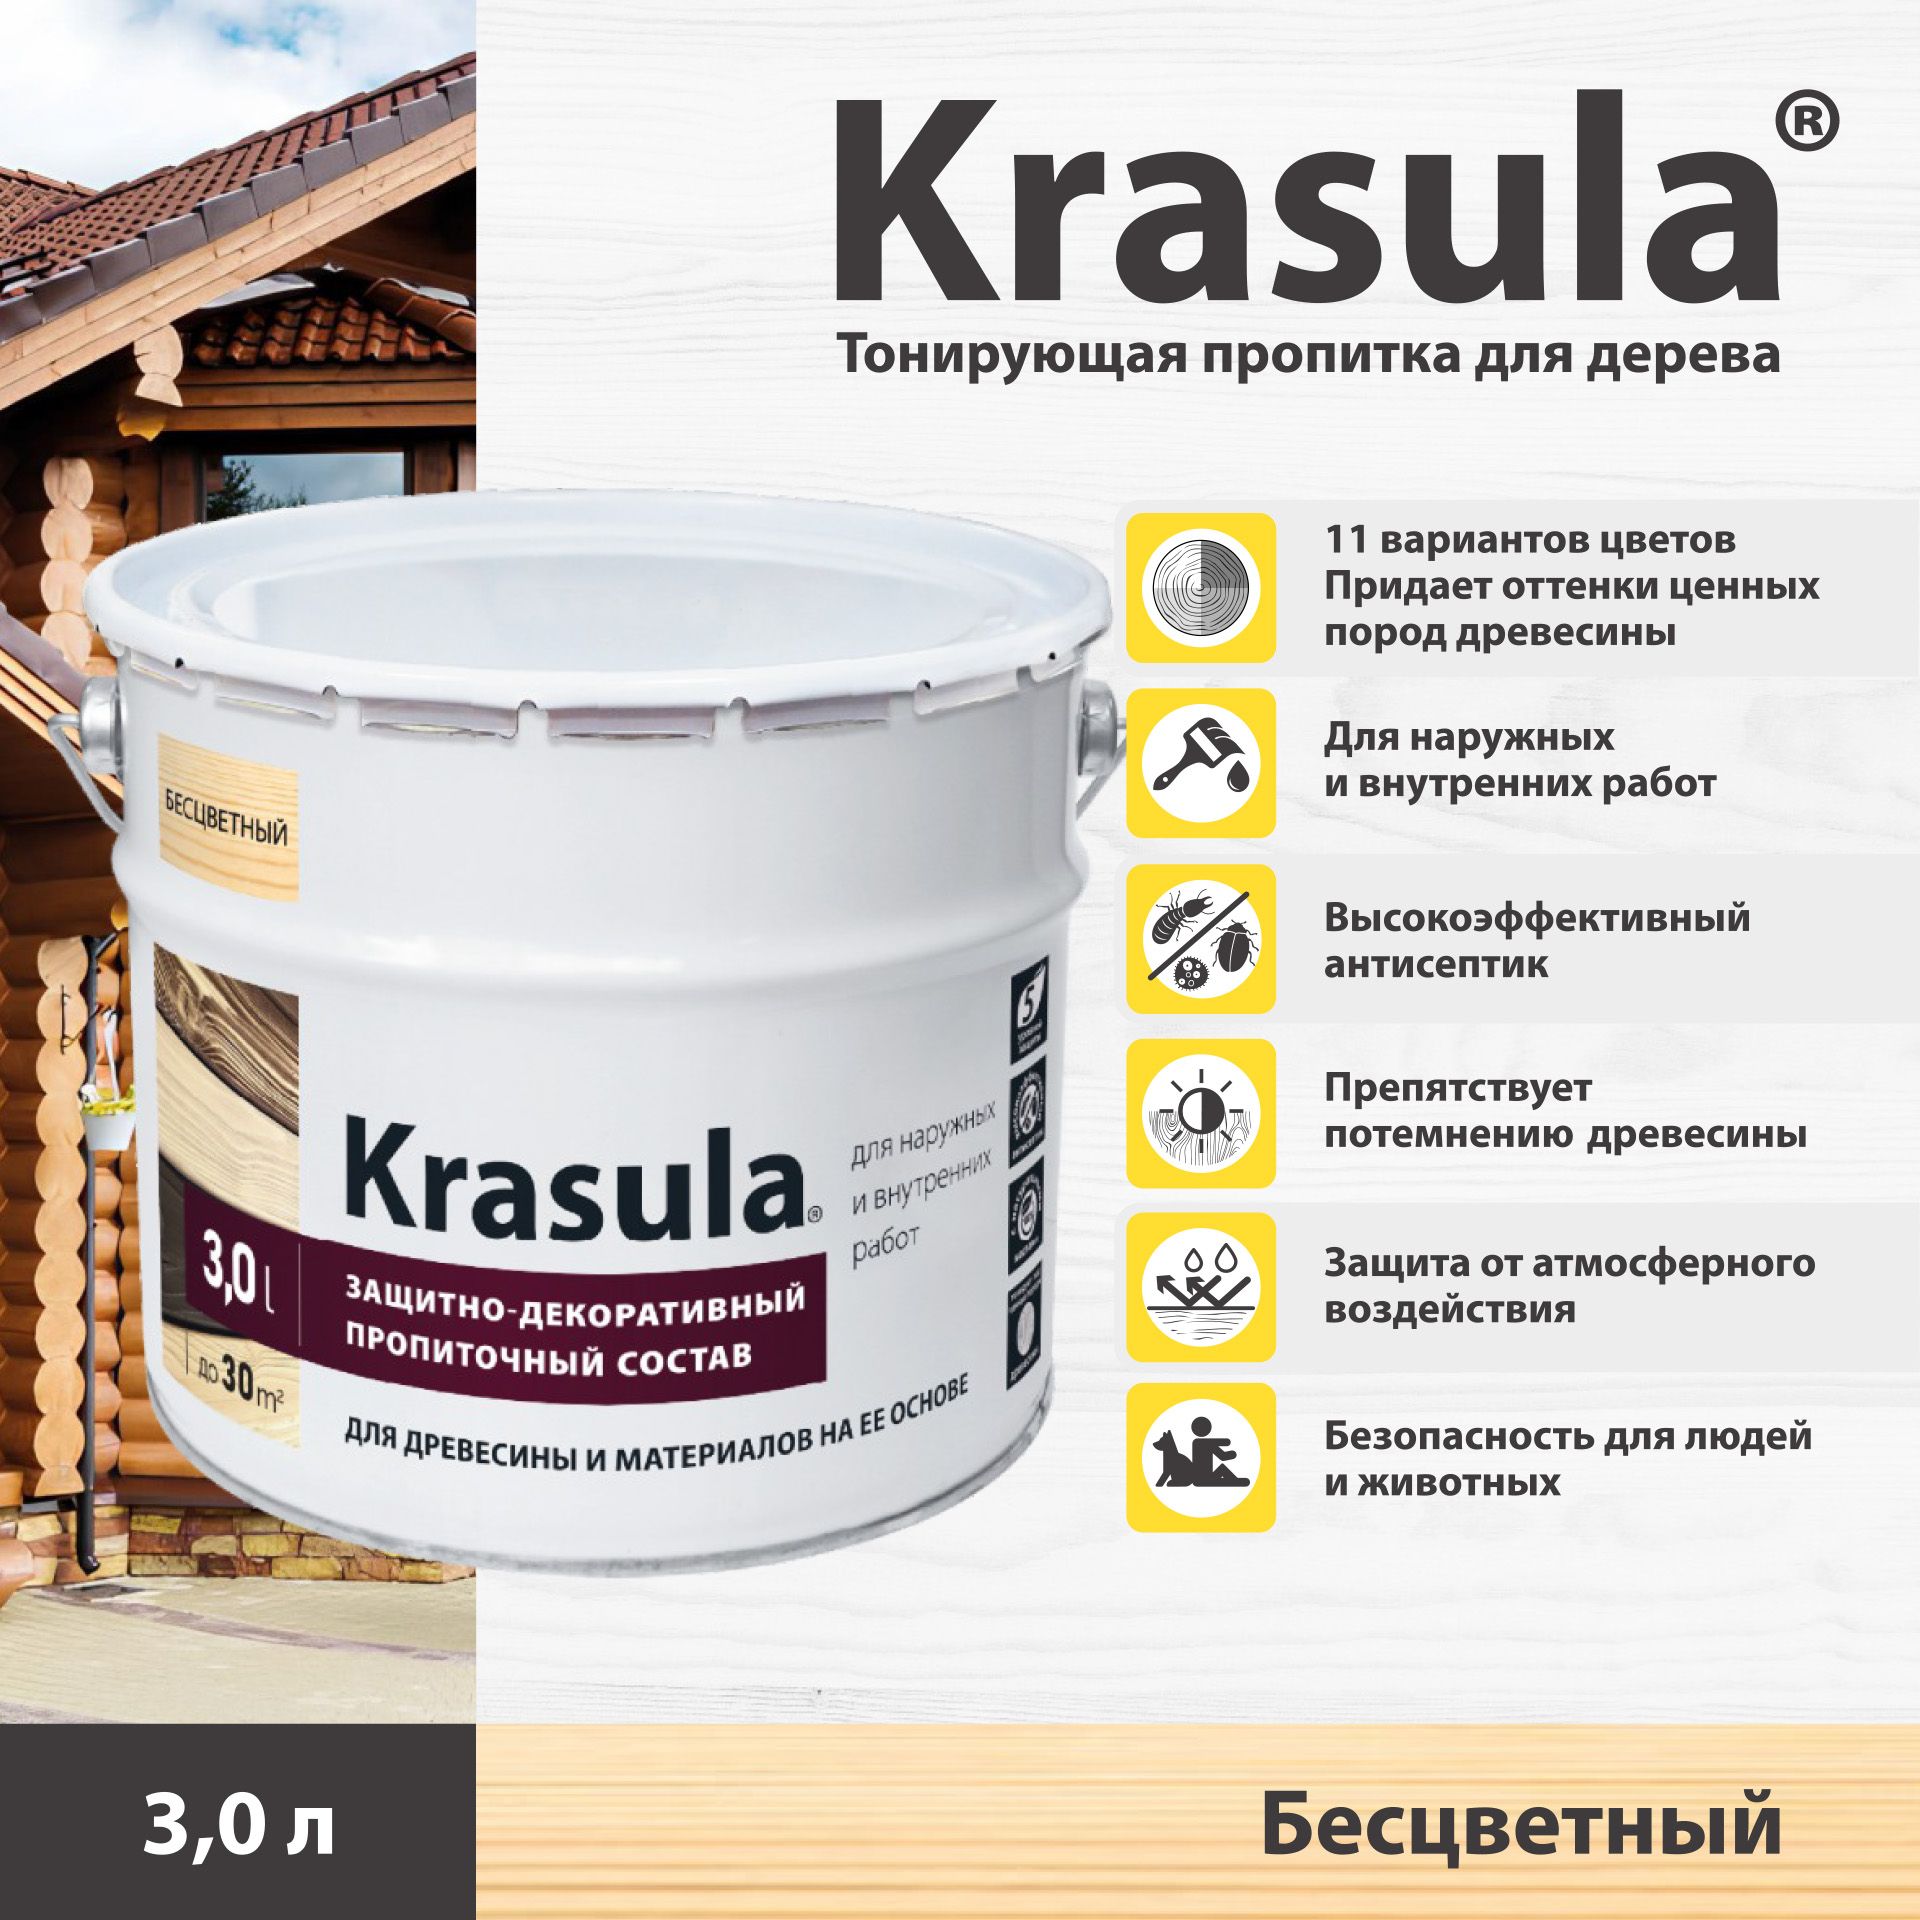 ТонирующаяпропиткадлядереваKrasula/3л/Бесцветный,защитно-декоративныйсоставдлядревесиныКрасула